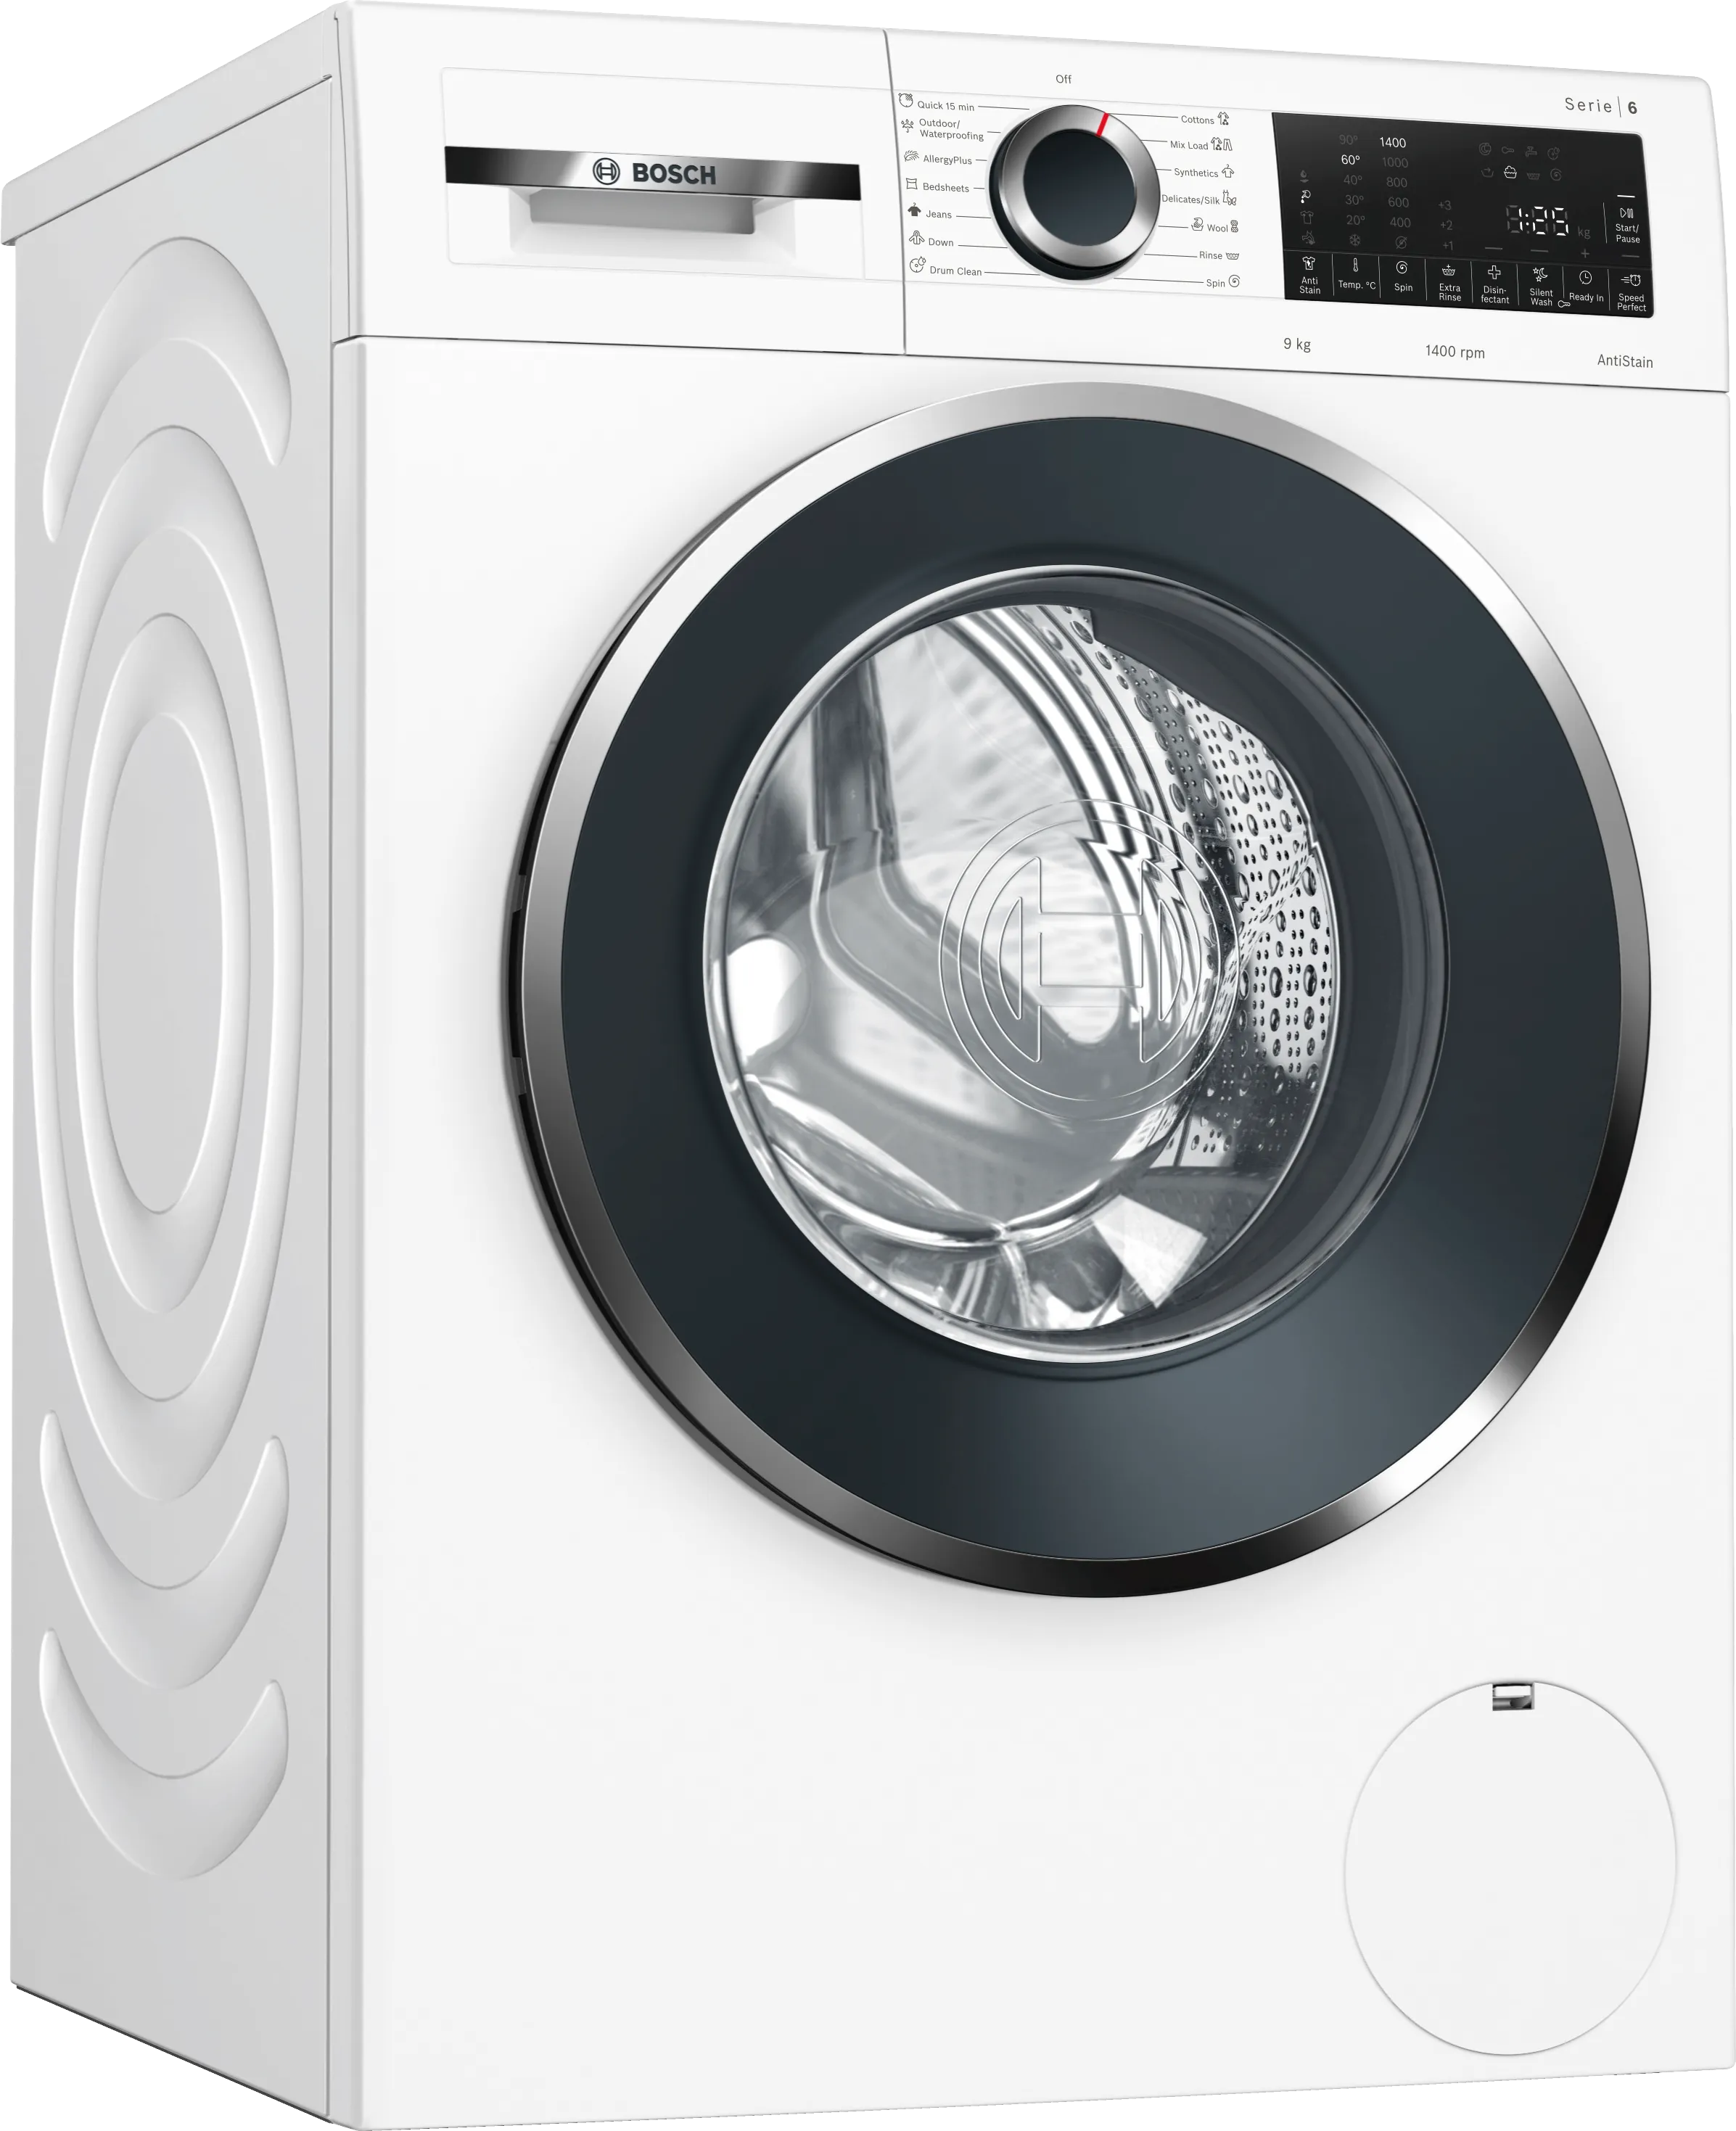 Series 6 Washing machine, front loader 9 kg 1400 rpm 